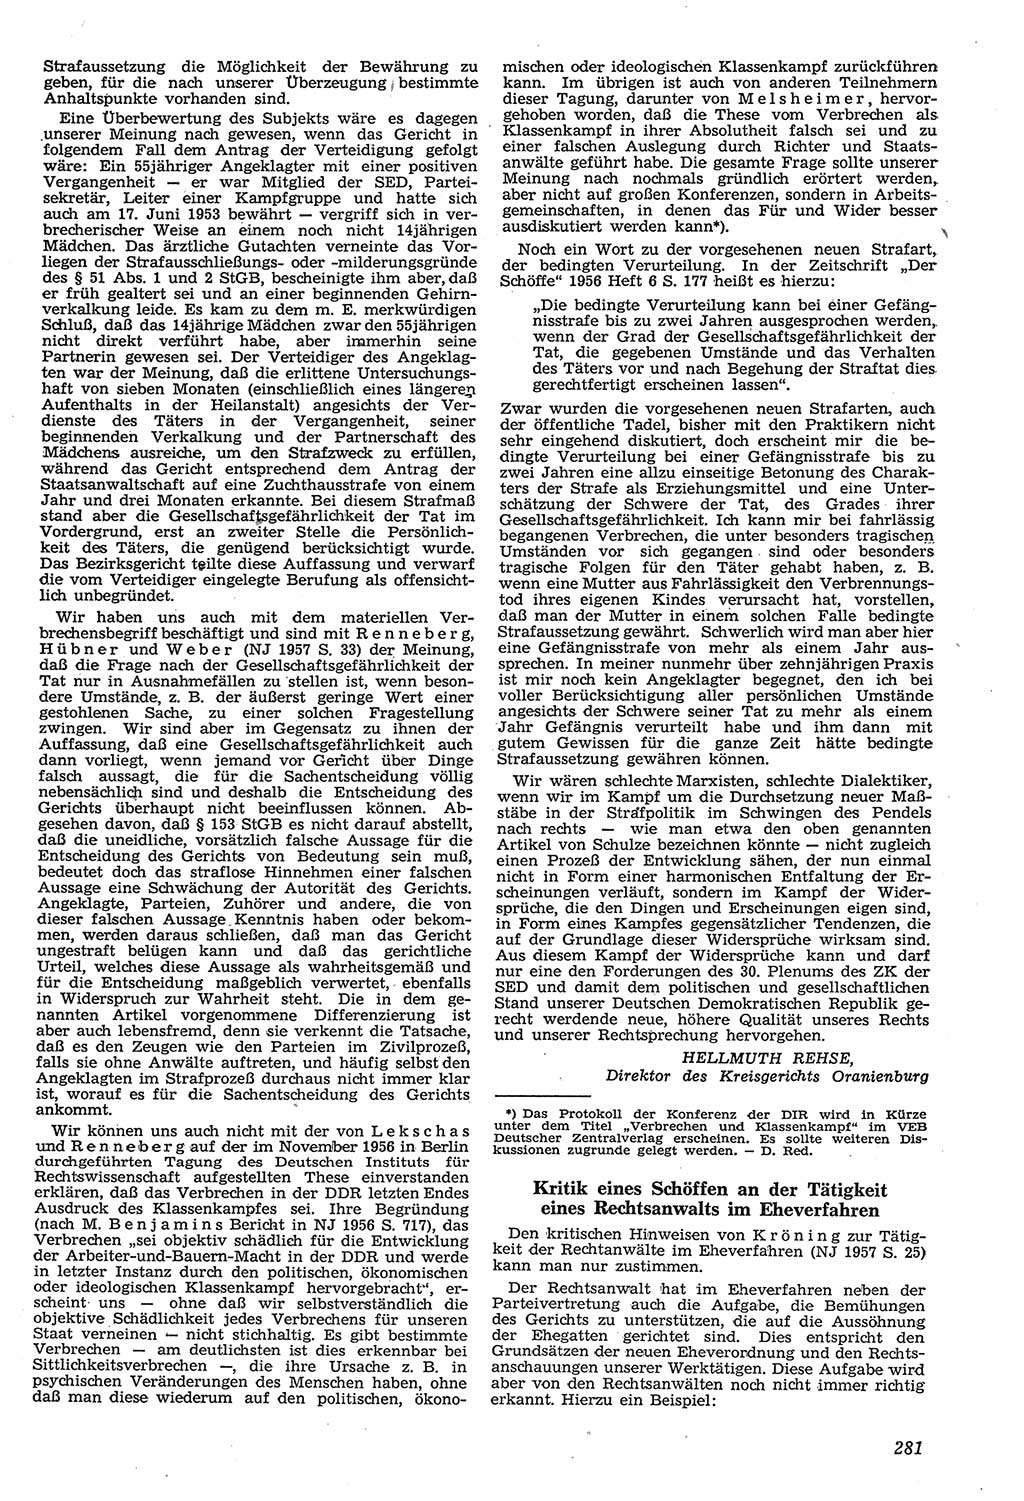 Neue Justiz (NJ), Zeitschrift für Recht und Rechtswissenschaft [Deutsche Demokratische Republik (DDR)], 11. Jahrgang 1957, Seite 281 (NJ DDR 1957, S. 281)